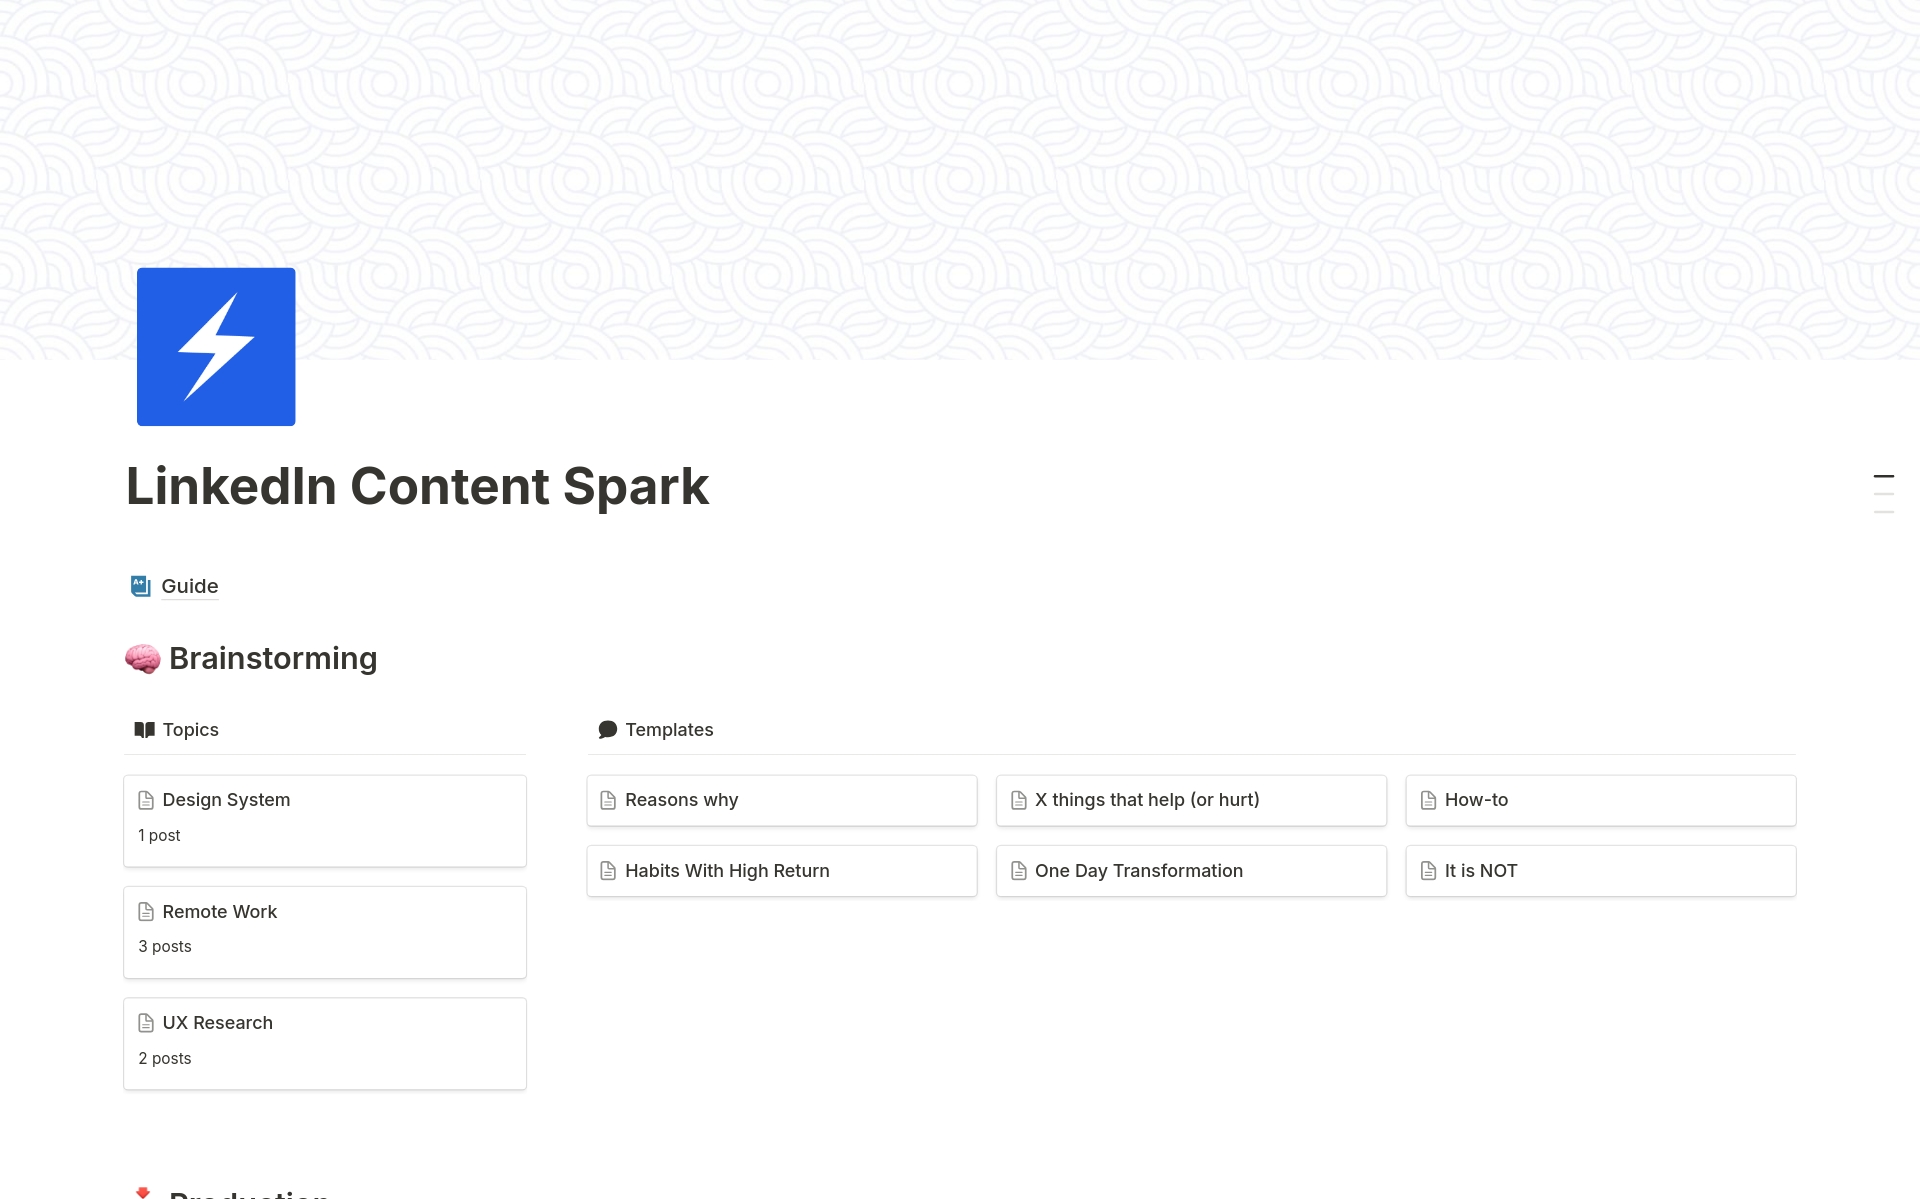 Vista previa de una plantilla para LinkedIn Content Spark